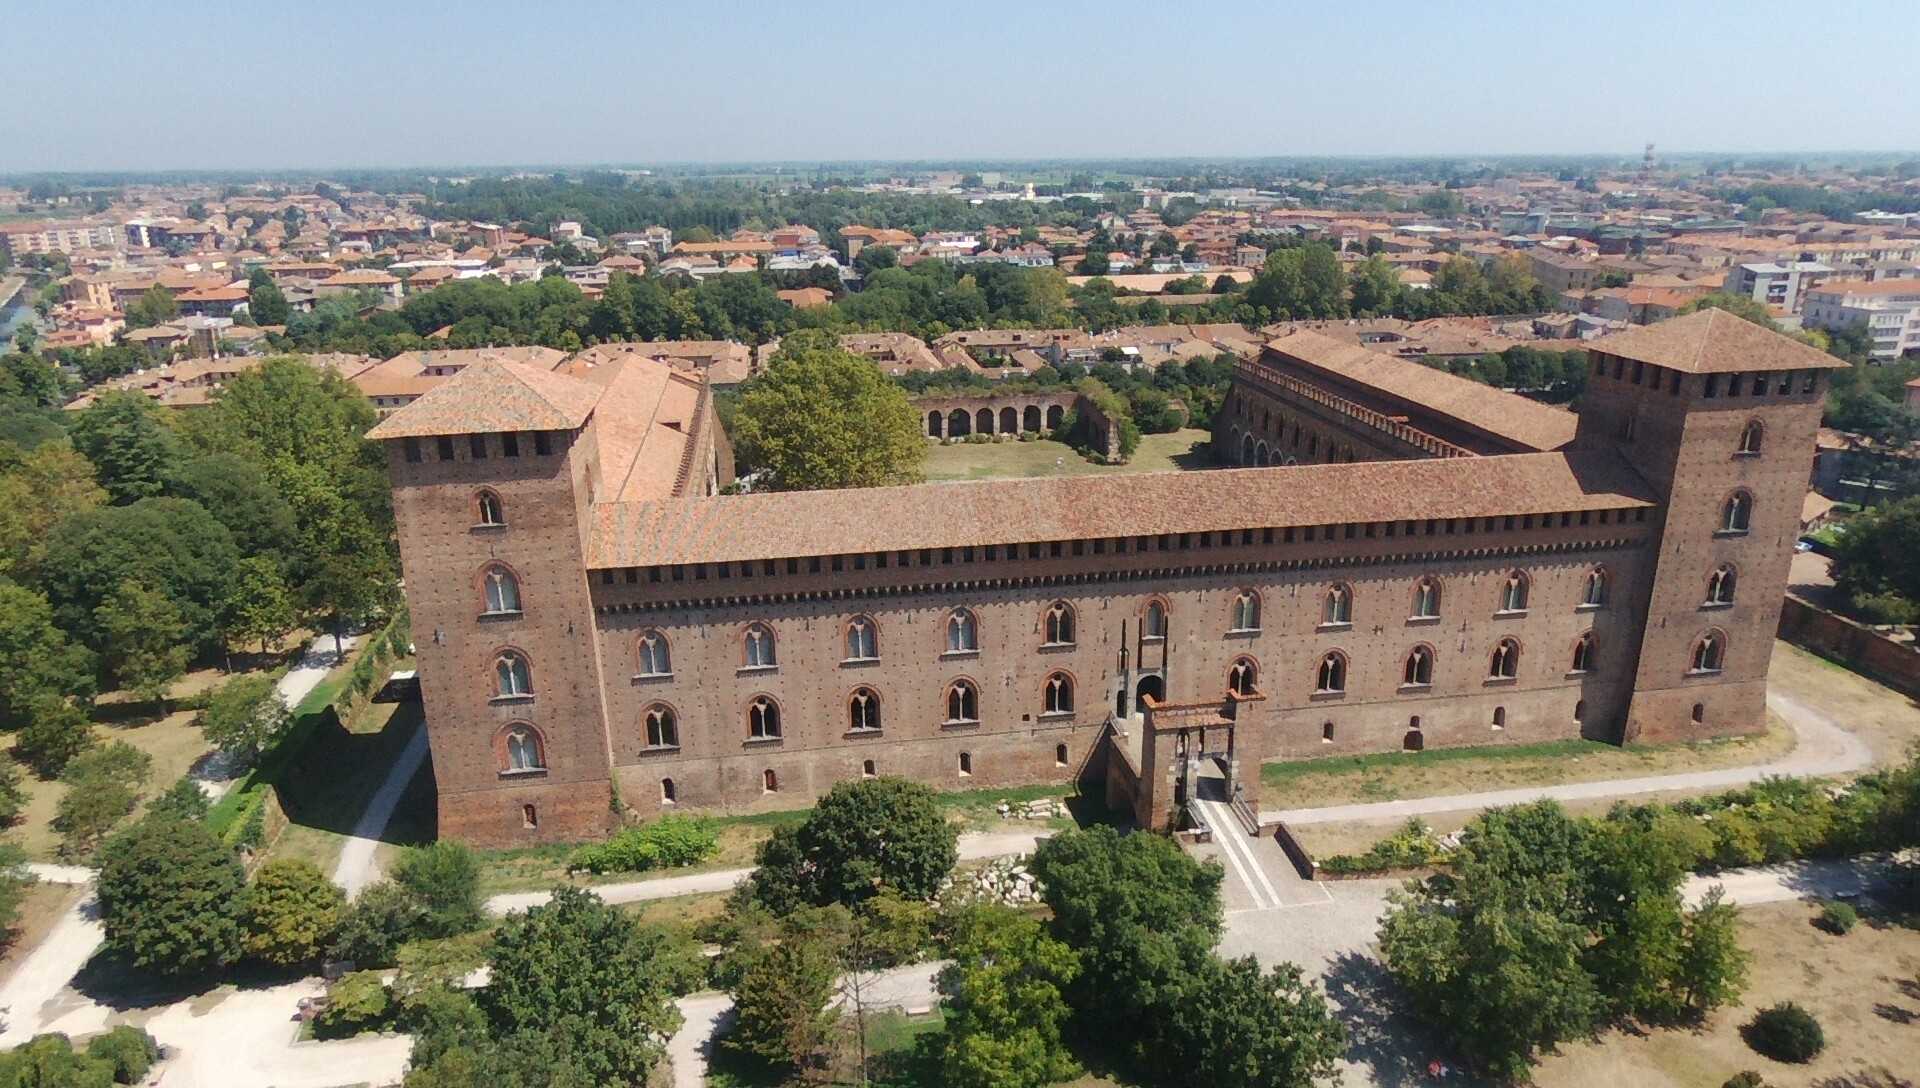 Il castello Visconteo di Pavia foto del Pilota di Drone (APR) Fabio Manera 